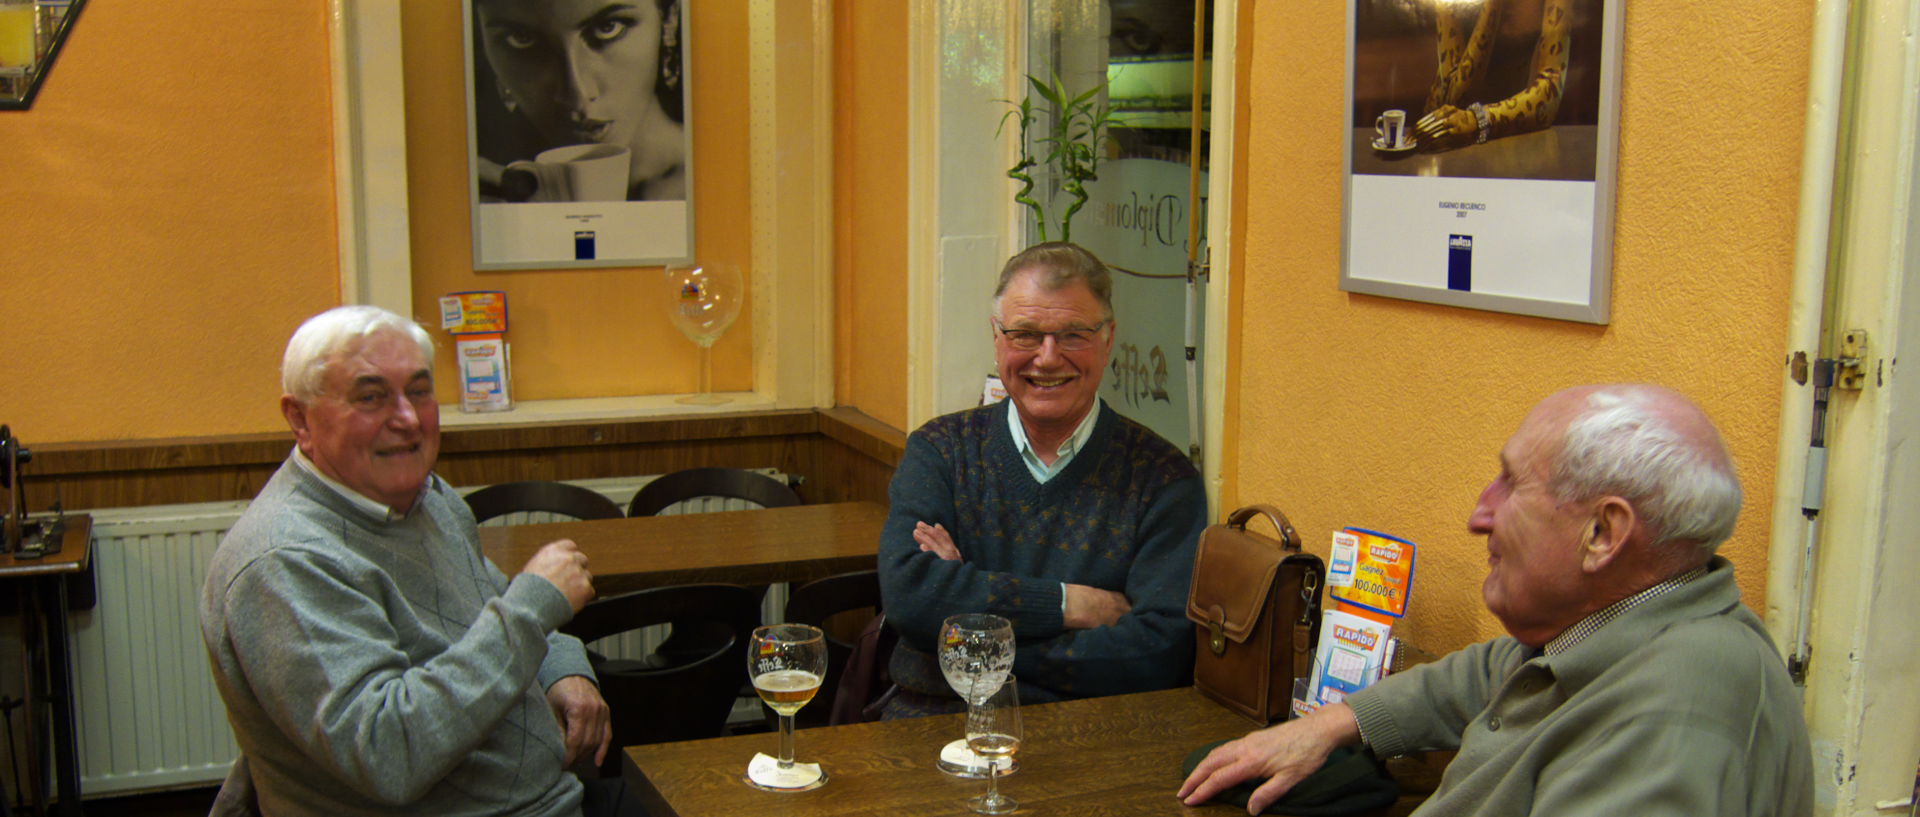 Photo dans un café, au Diplomate, Tourcoing, rue de la Cloche.